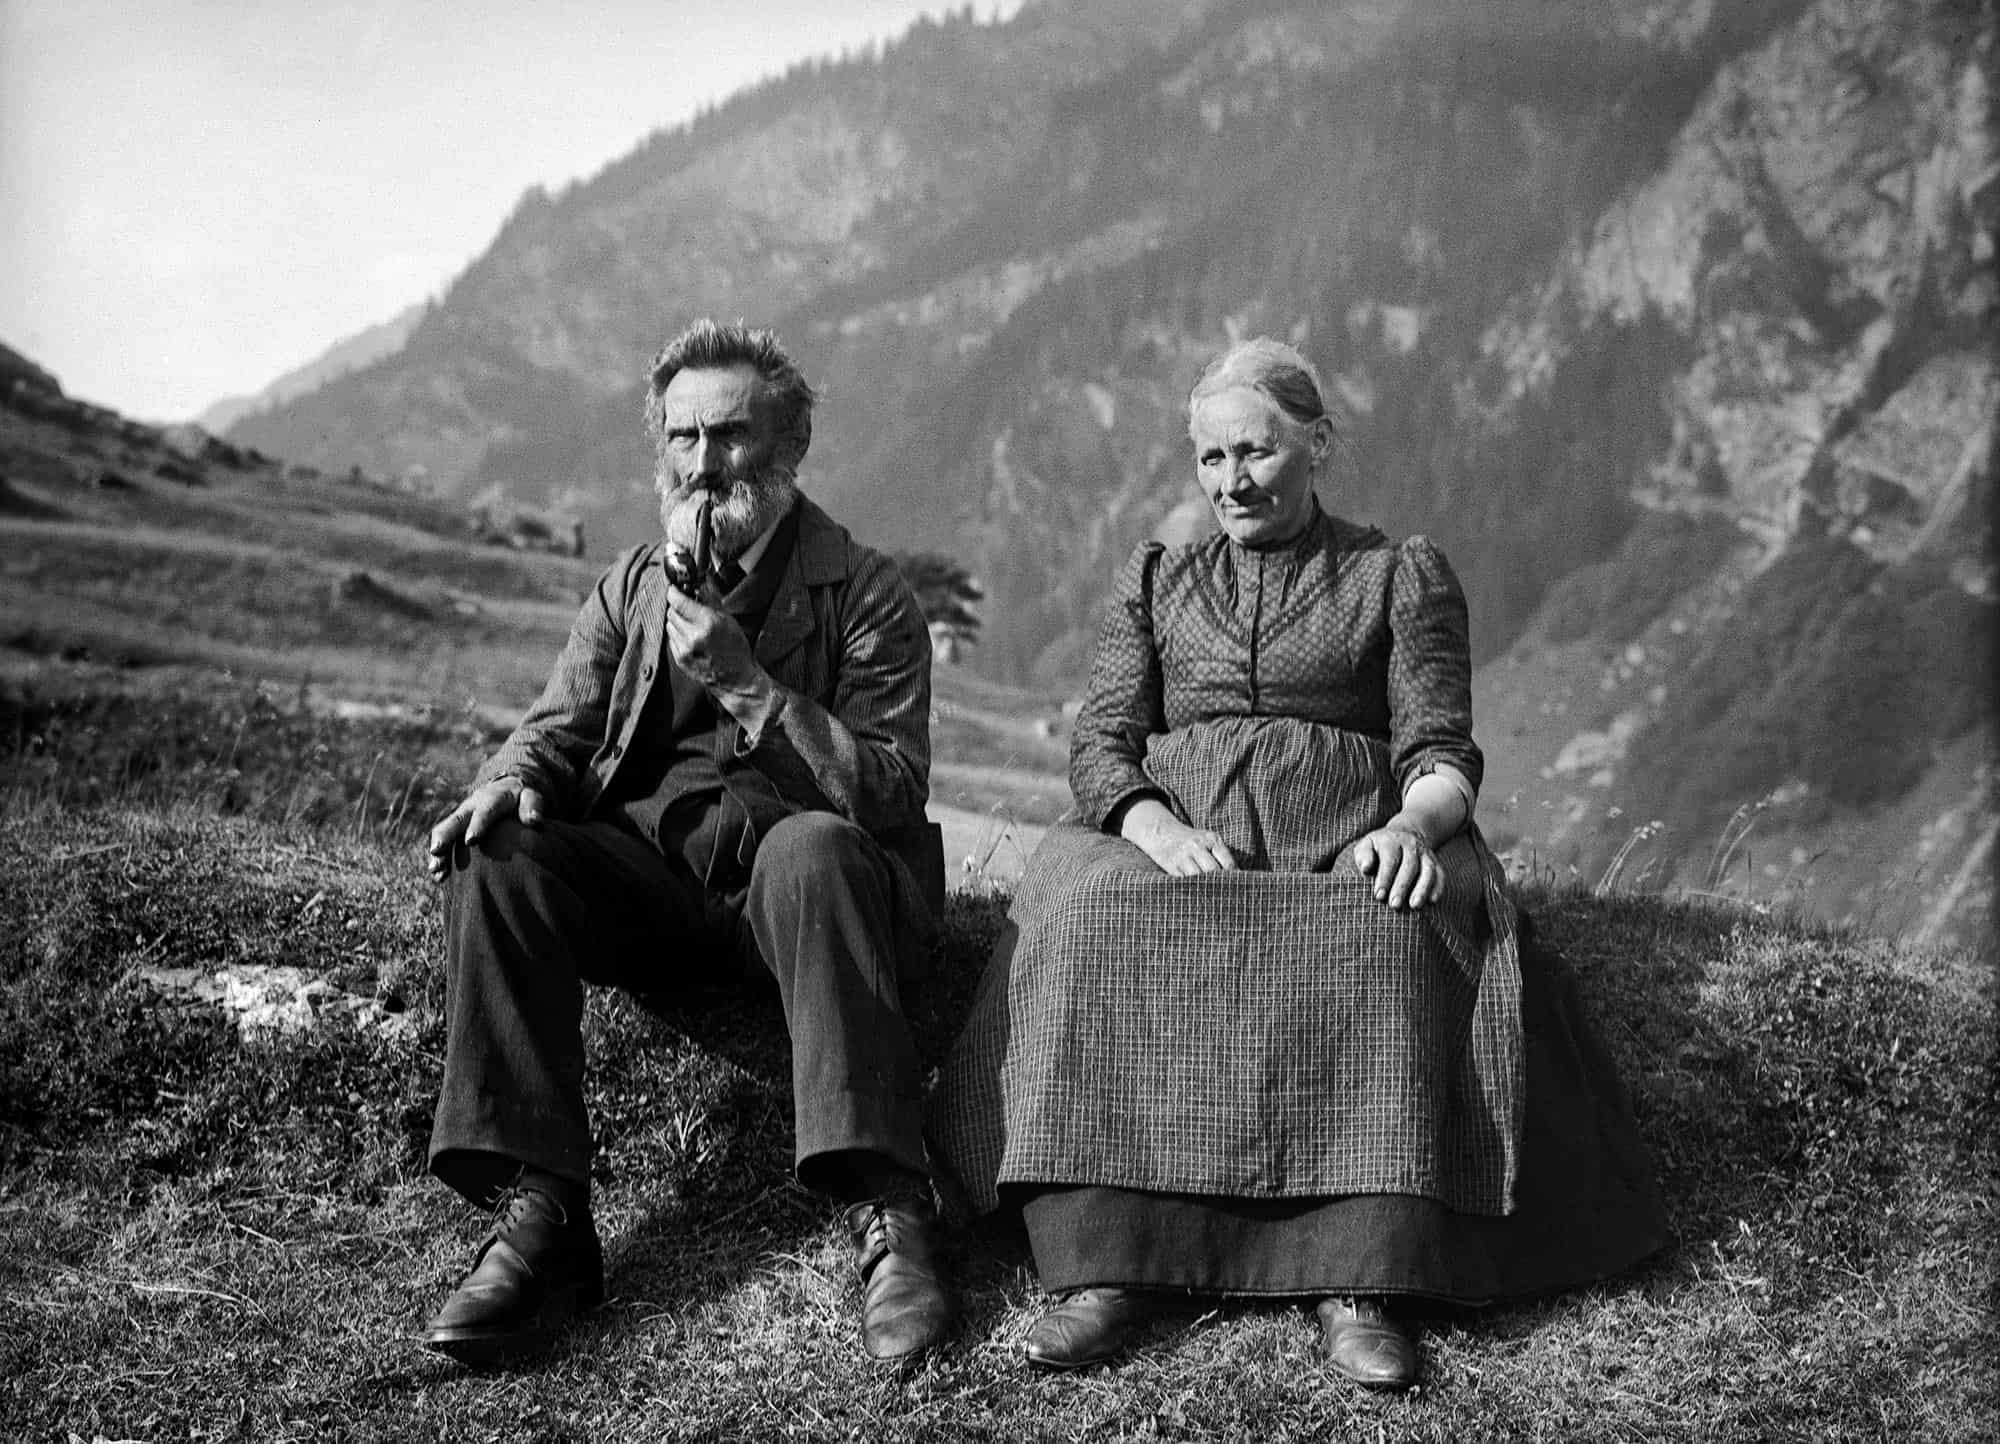 Älteres Ehepaar in Vals, der Mann raucht Tobak-Pfeife, Rudolf Zinggeler 1911